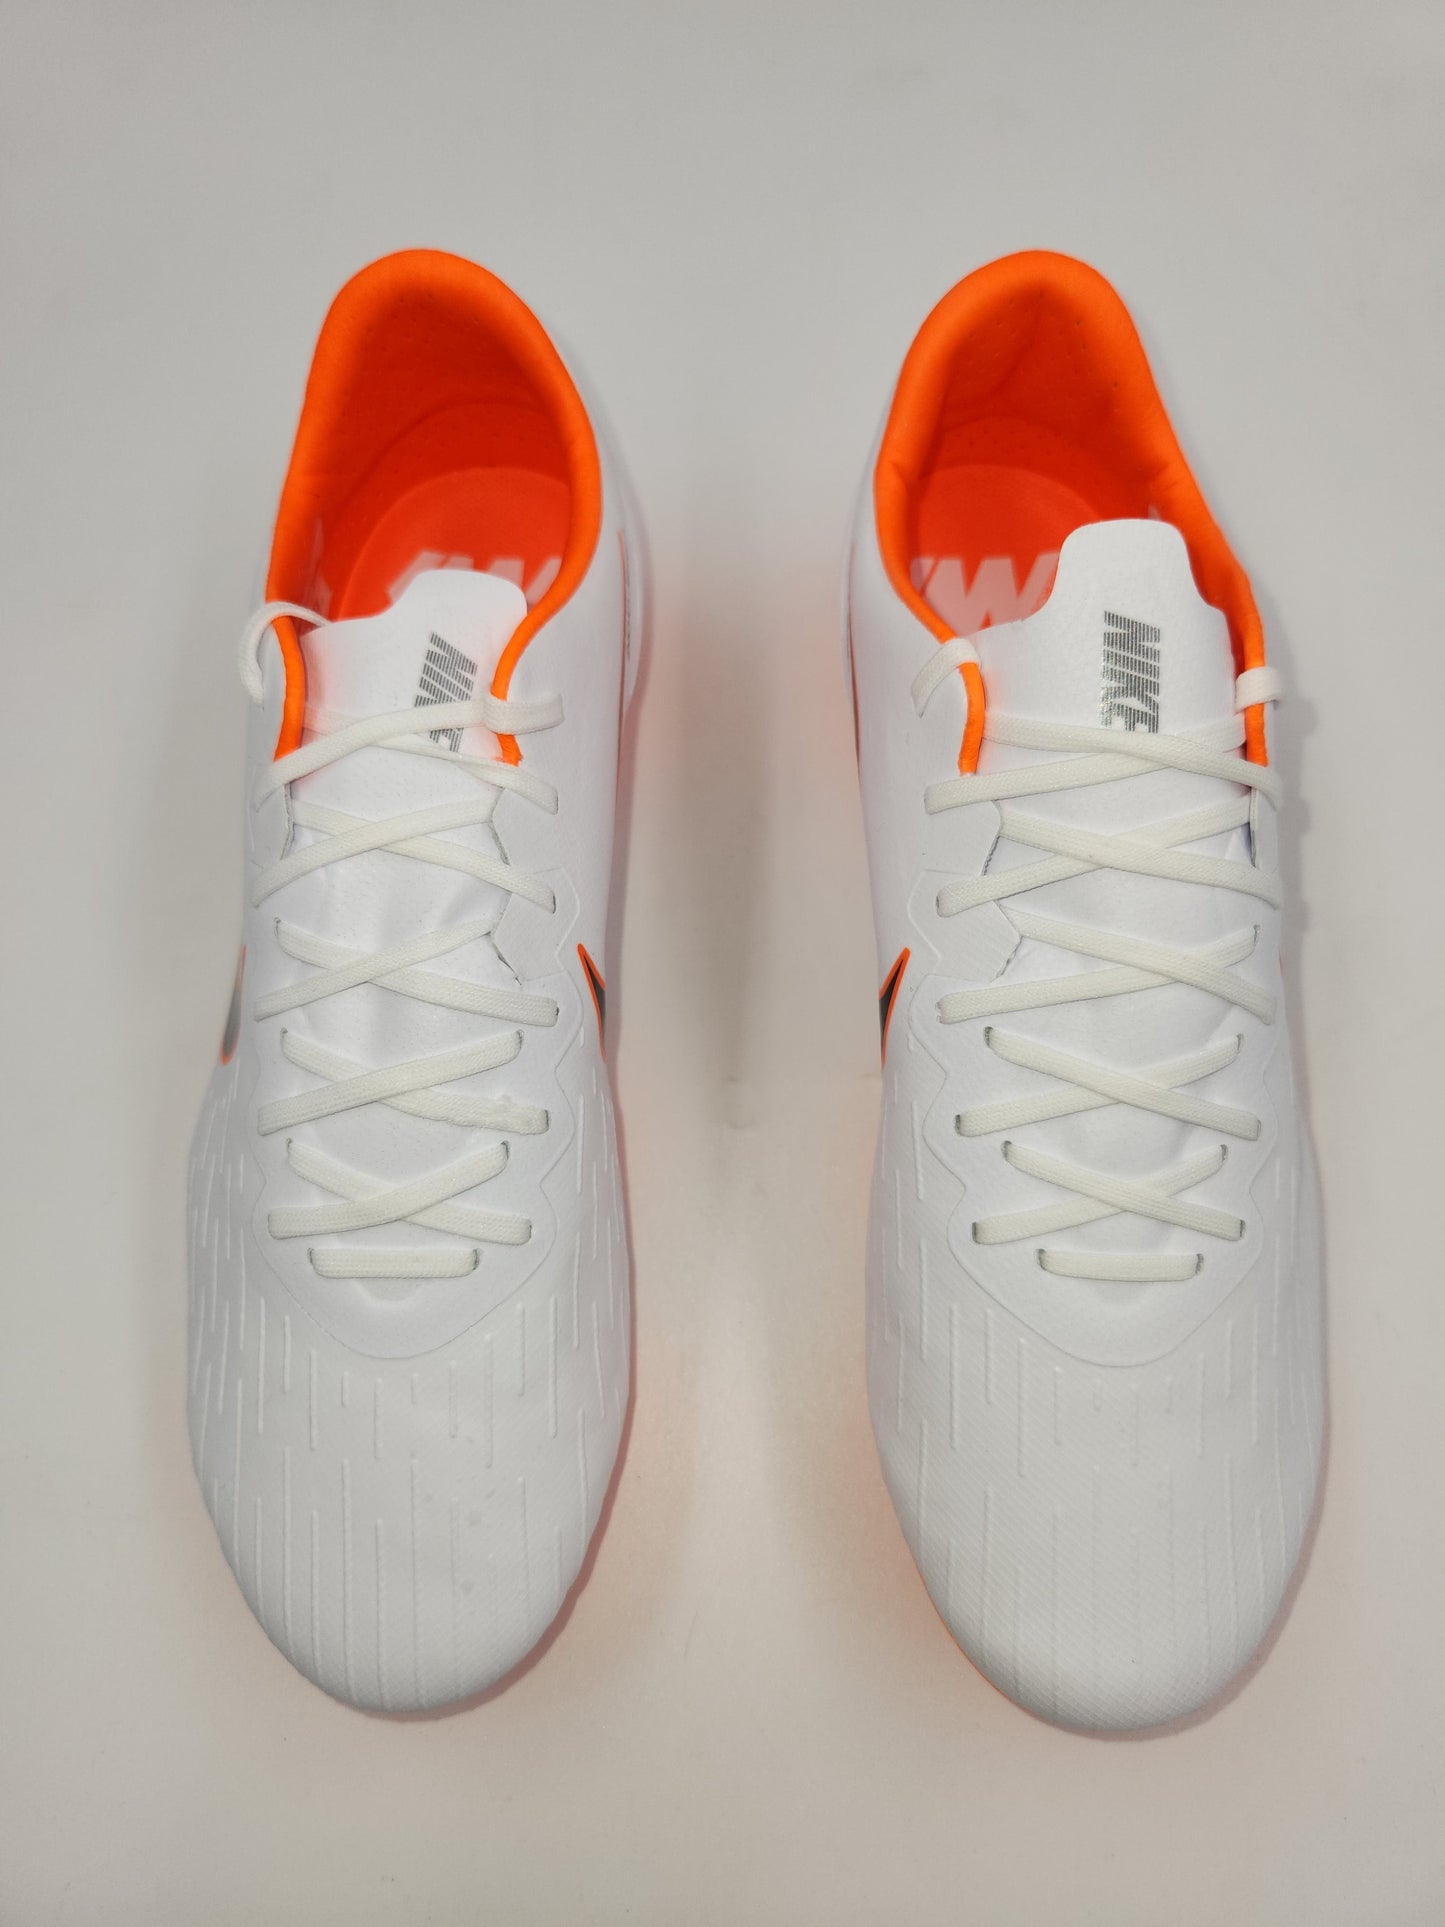 Nike Vapor 12 Pro FG White Orange